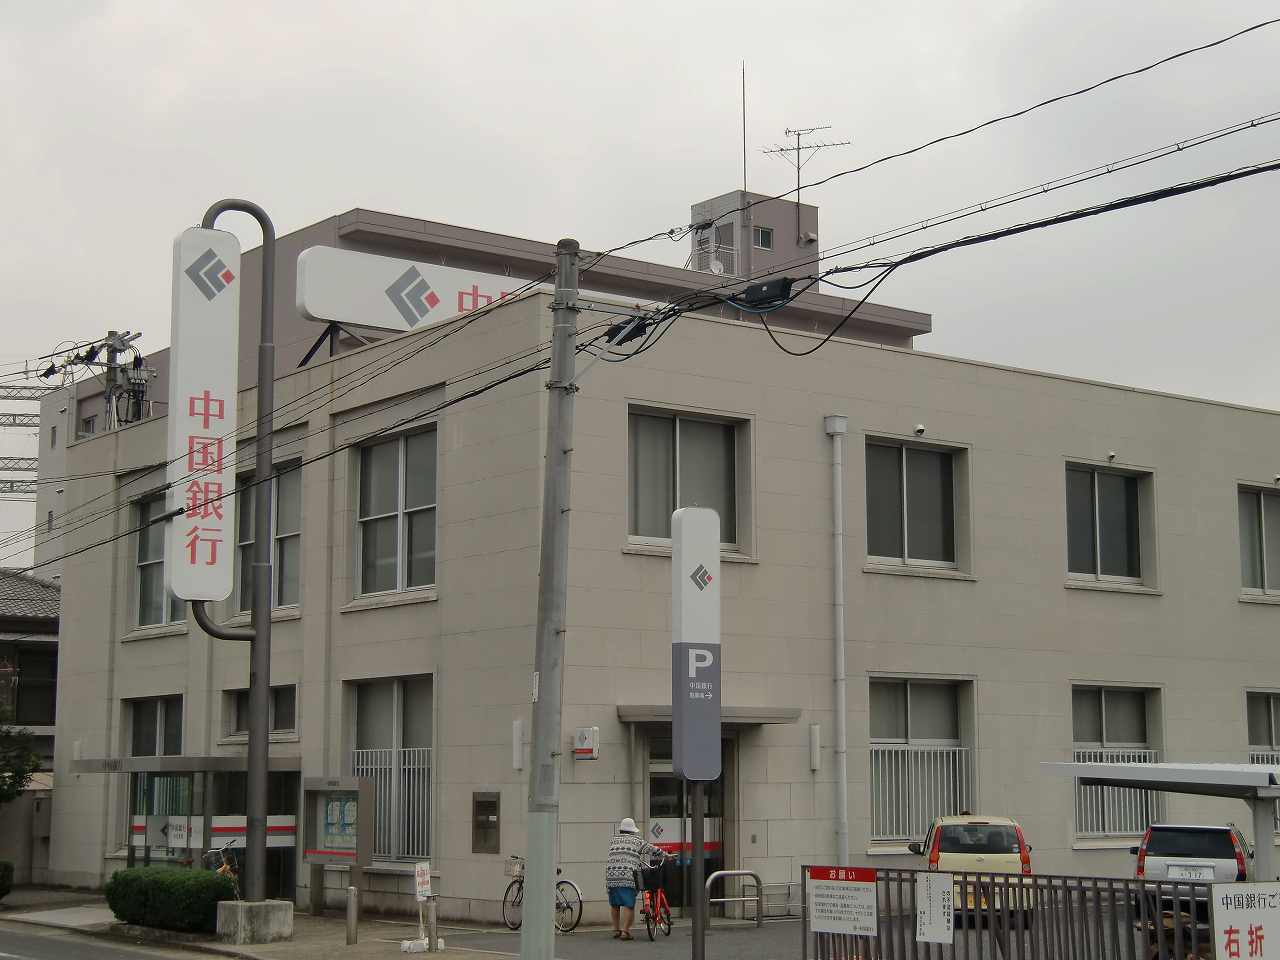 Bank. 219m to Bank of China Haraoshima Branch (Bank)